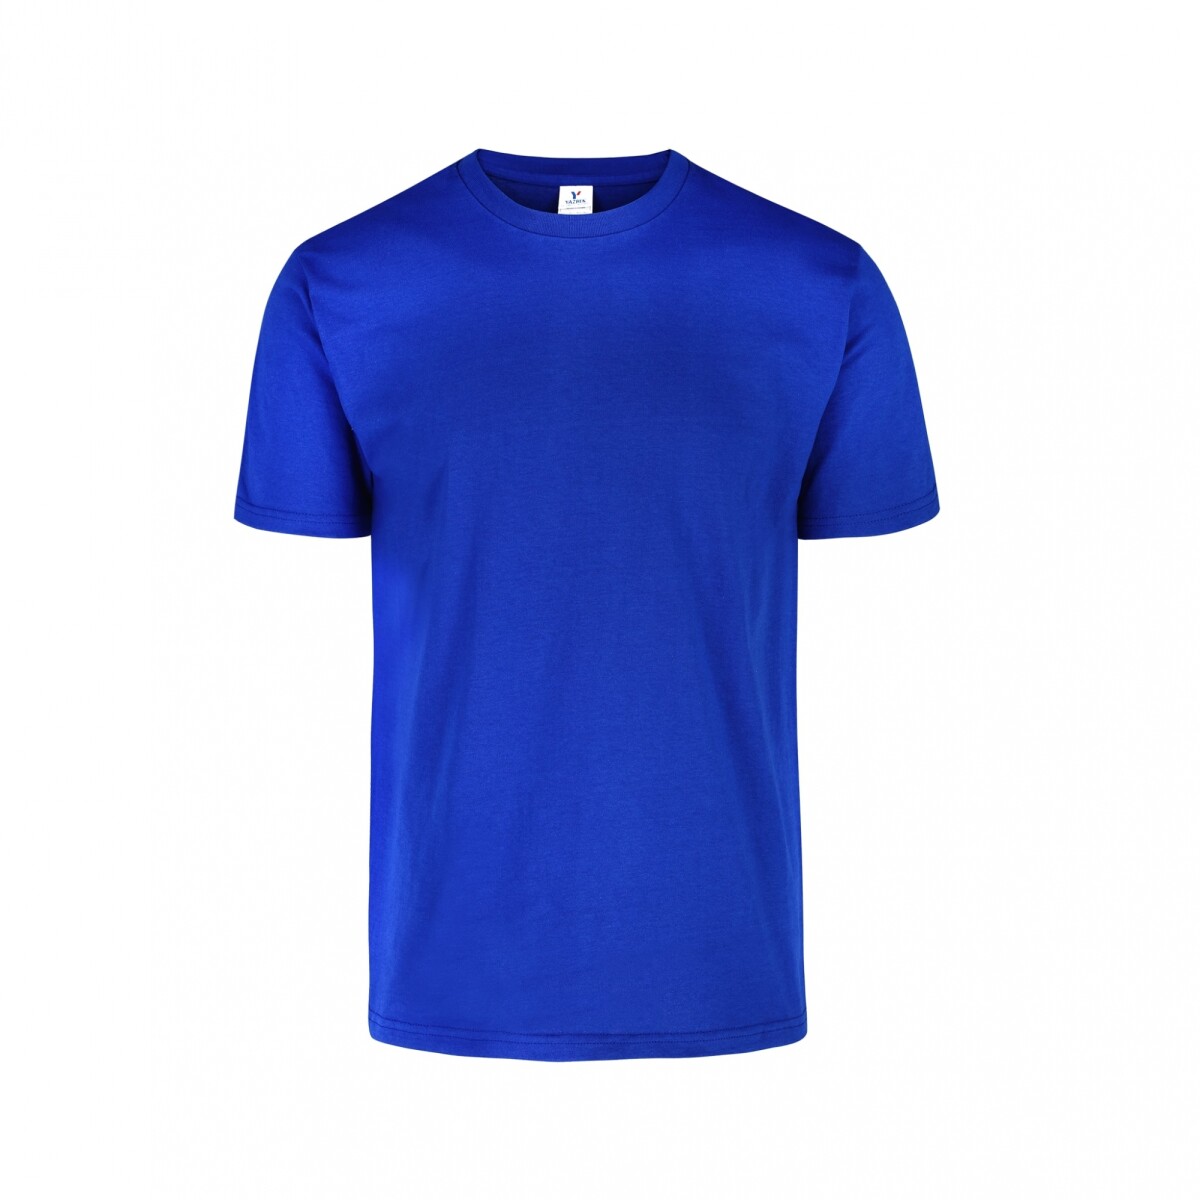 Camiseta a la base peso completo - Azul royal 